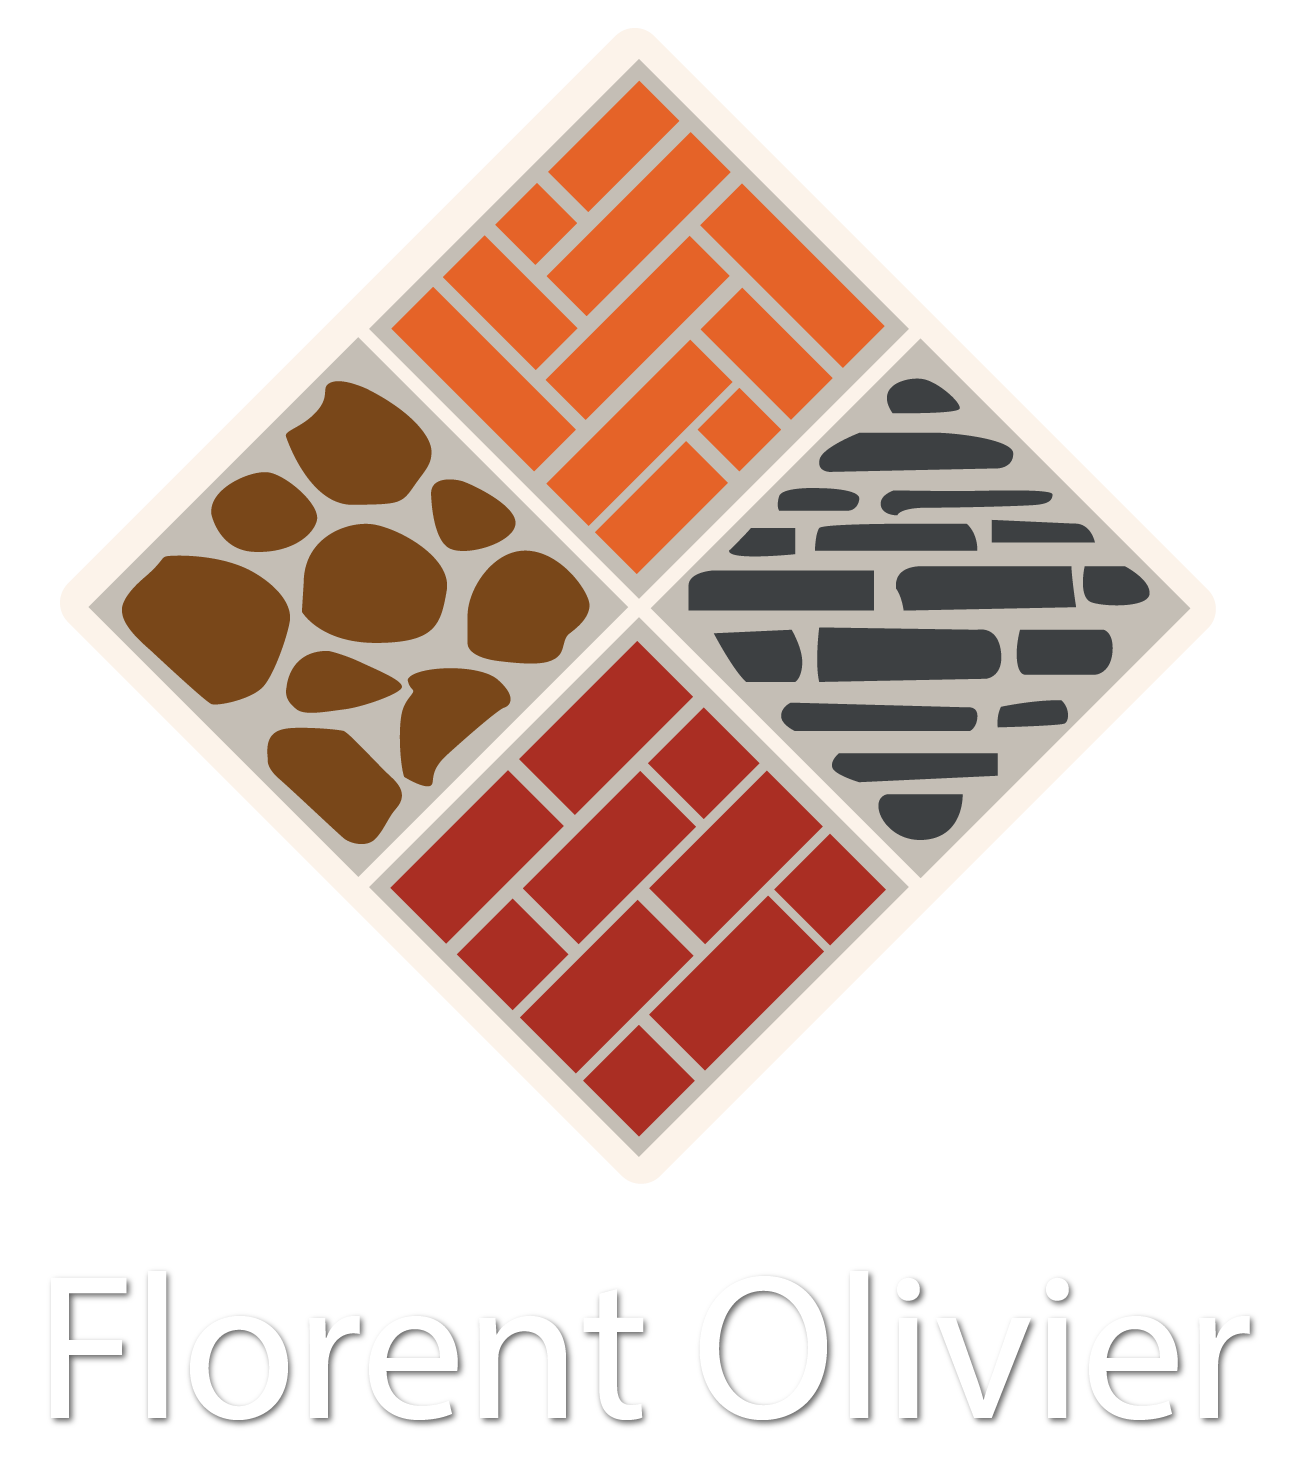 Florent Olivier logo